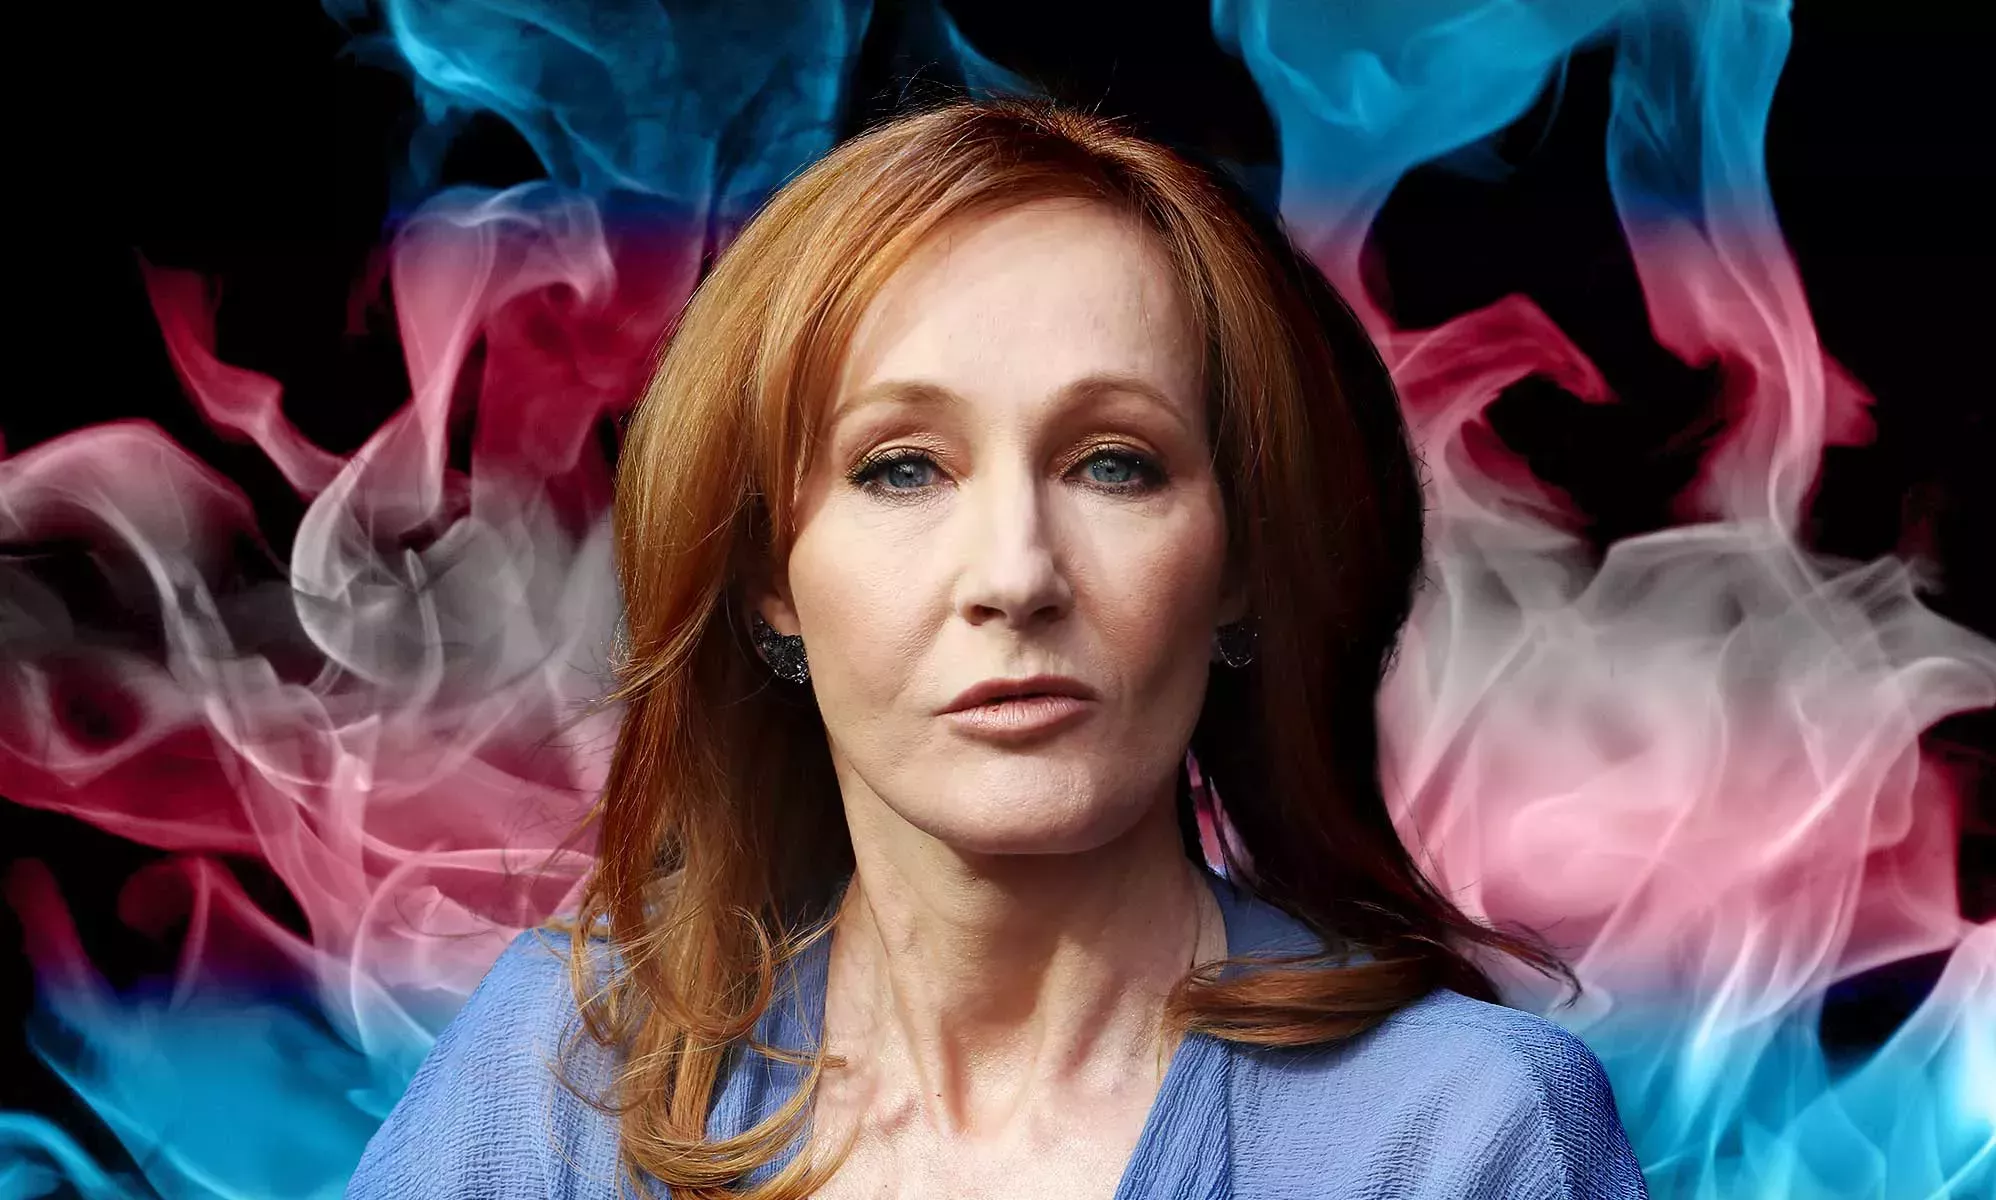 ¿Qué ha dicho JK Rowling sobre las personas trans? La historia de las opiniones de la autora de Harry Potter